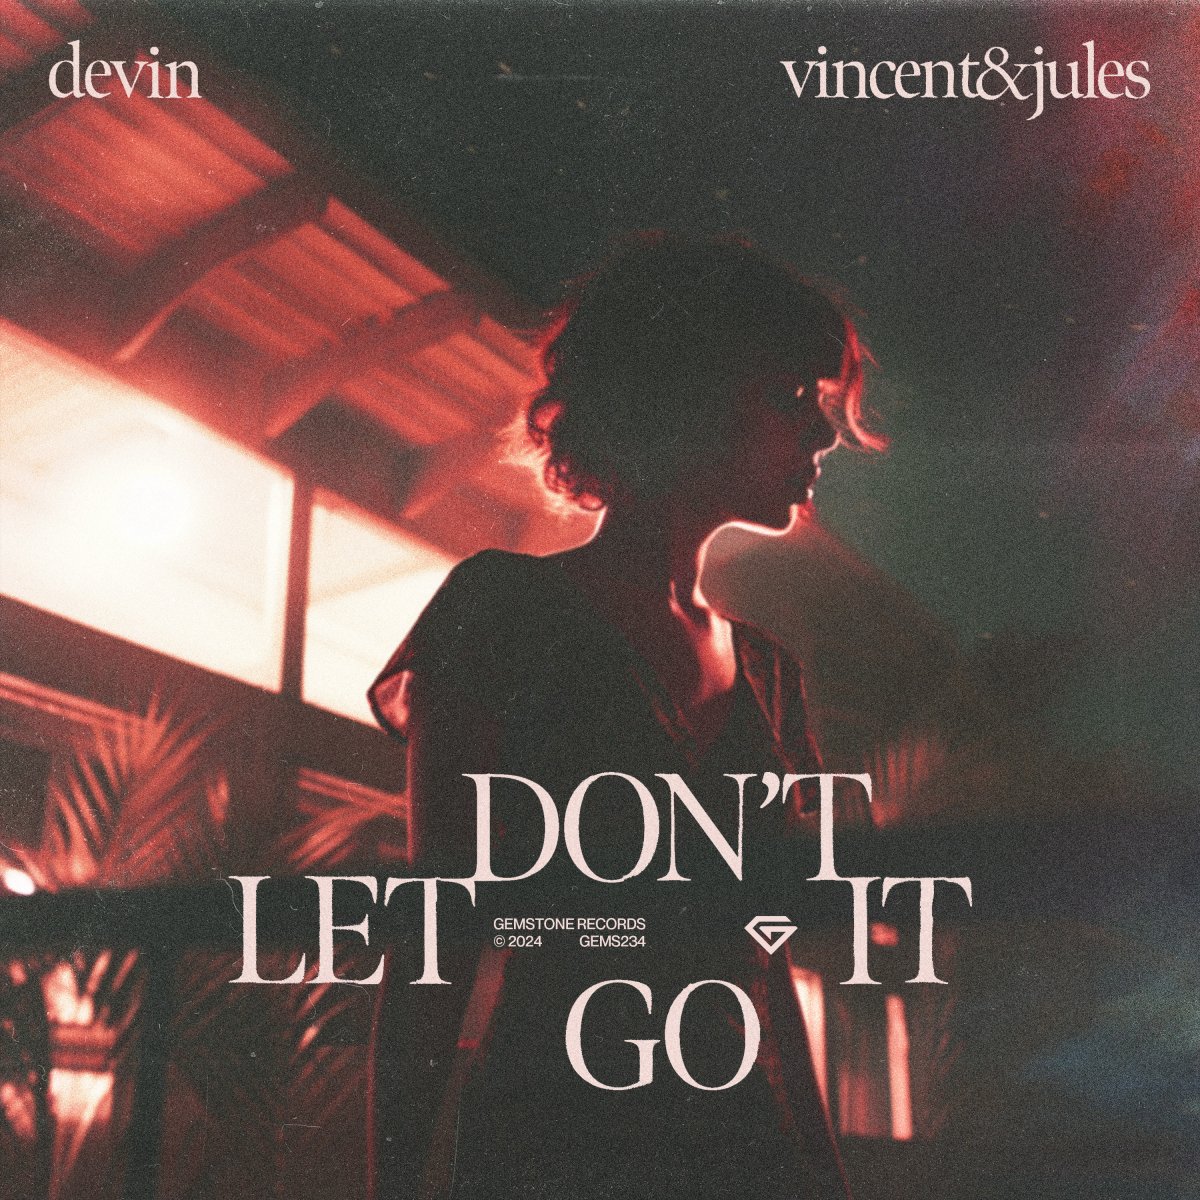 Don't Let It Go - devin⁠, Vincent & Jules ⁠ 